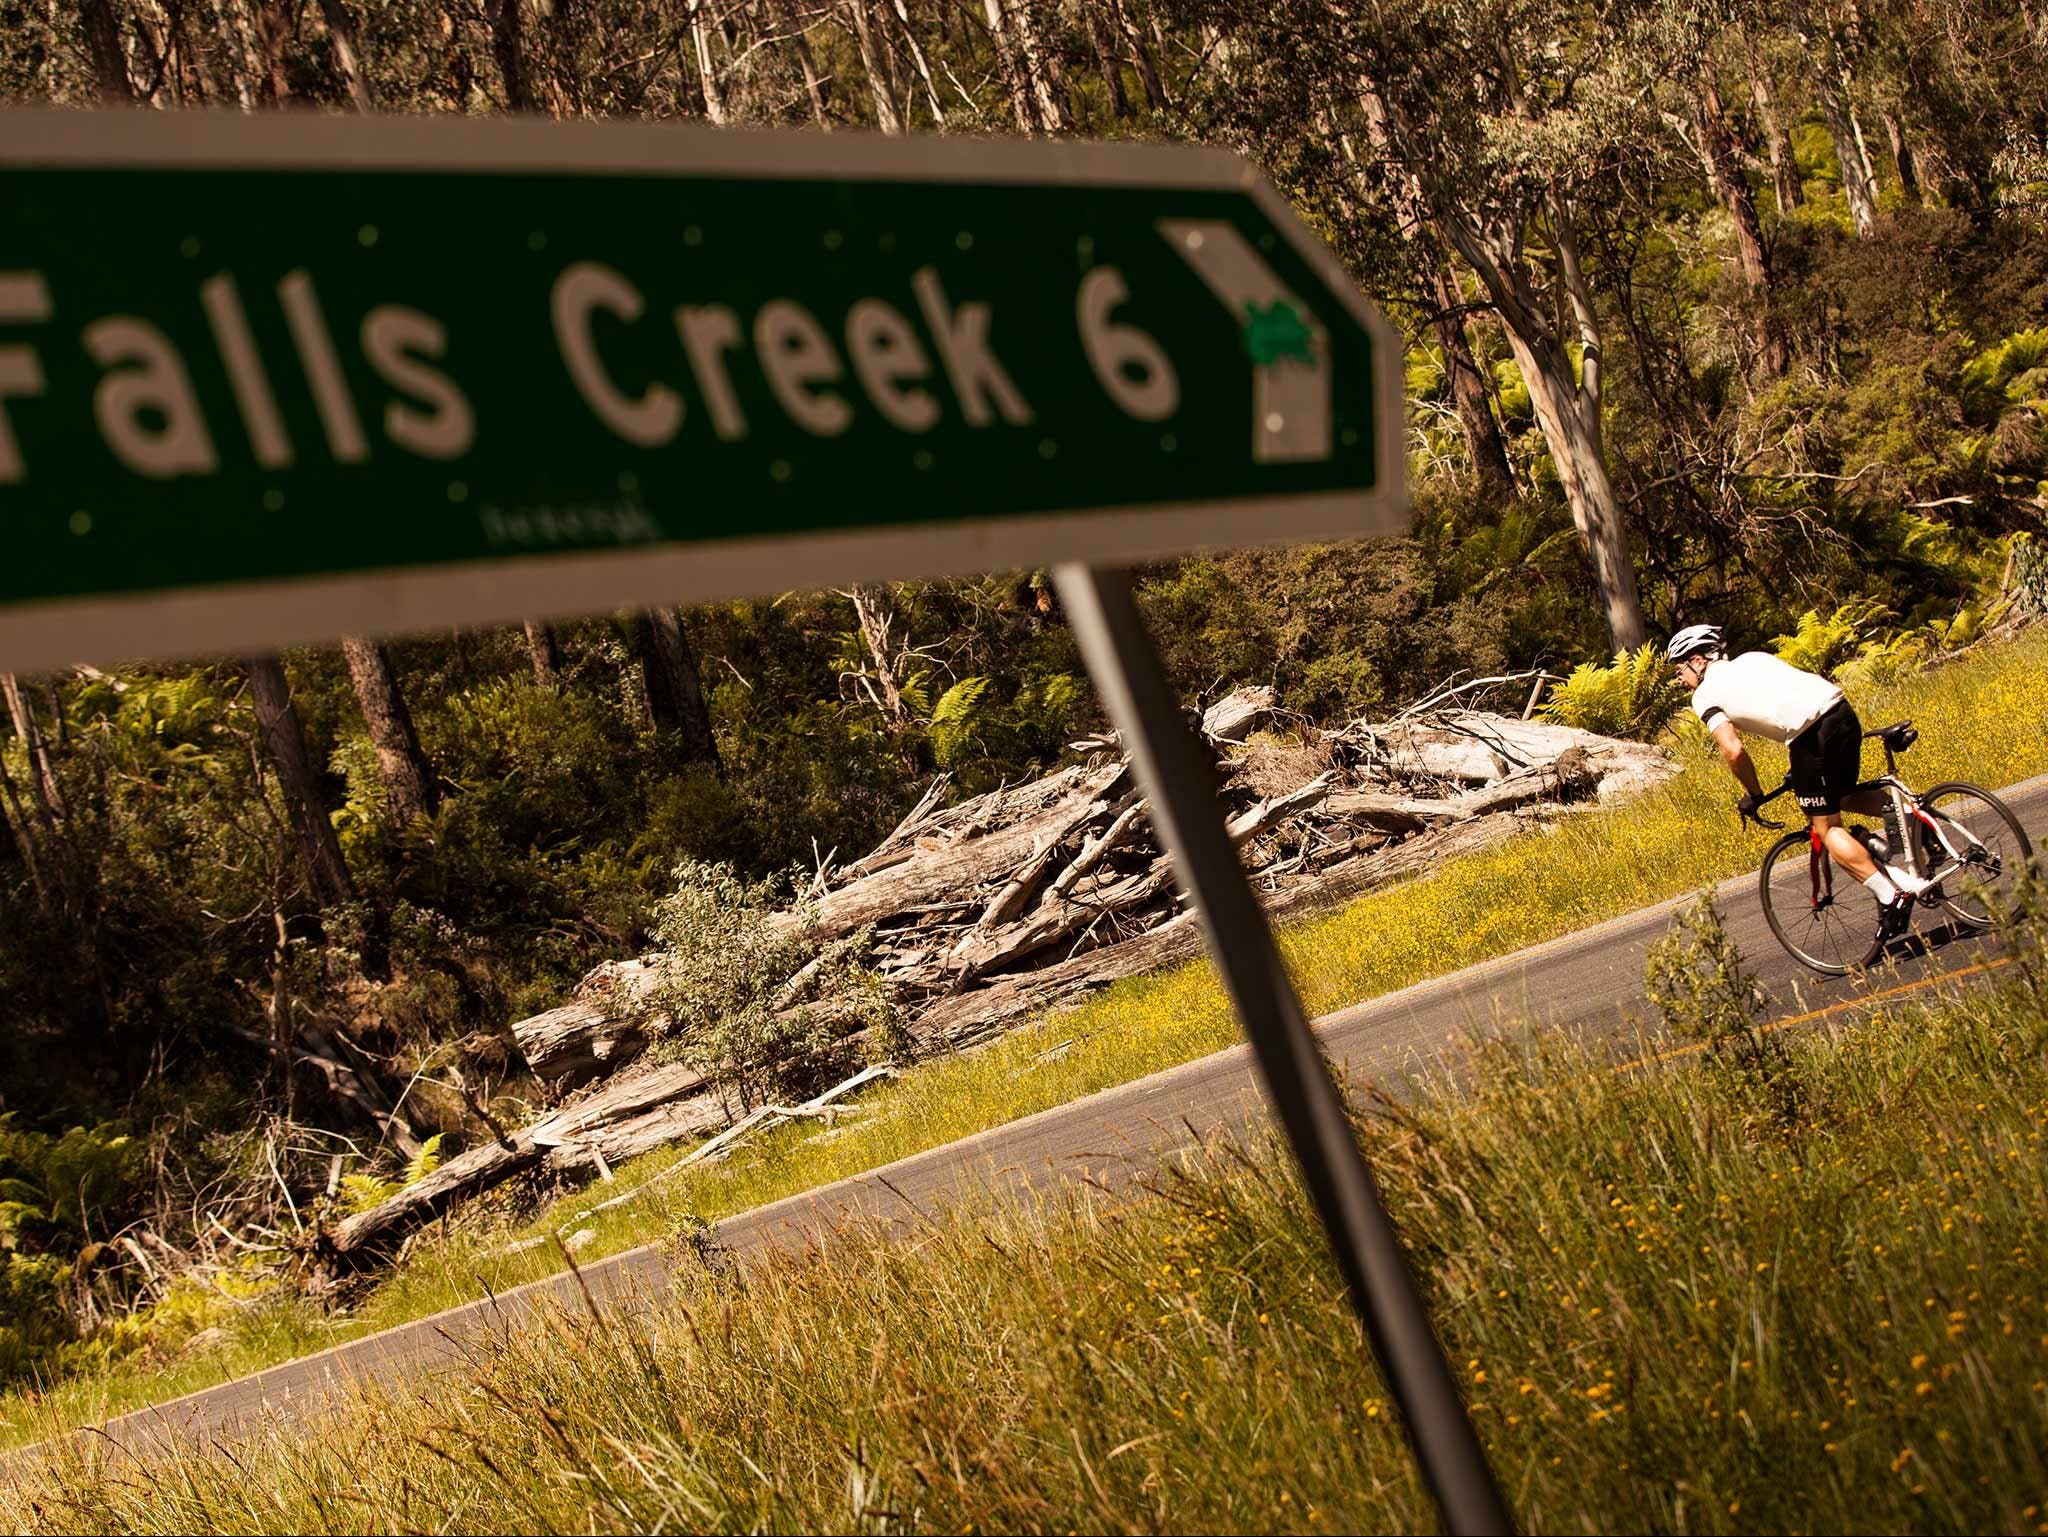 7 Peaks Ride - Falls Creek - Lightning Ridge Tourism